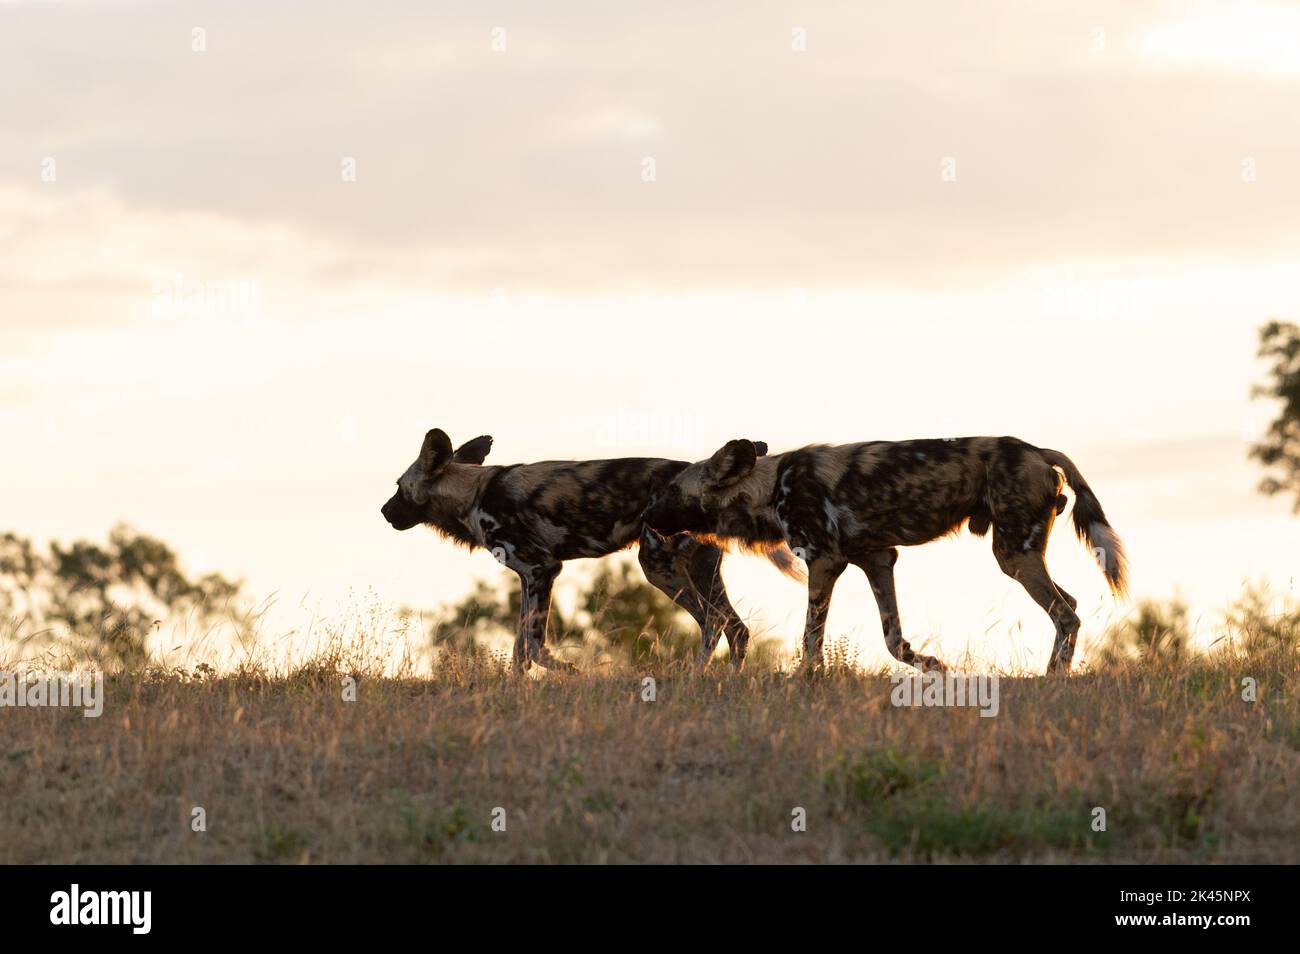 Deux chiens sauvages, Lycaon pictus, traversent l'herbe, rétroéclairés Banque D'Images